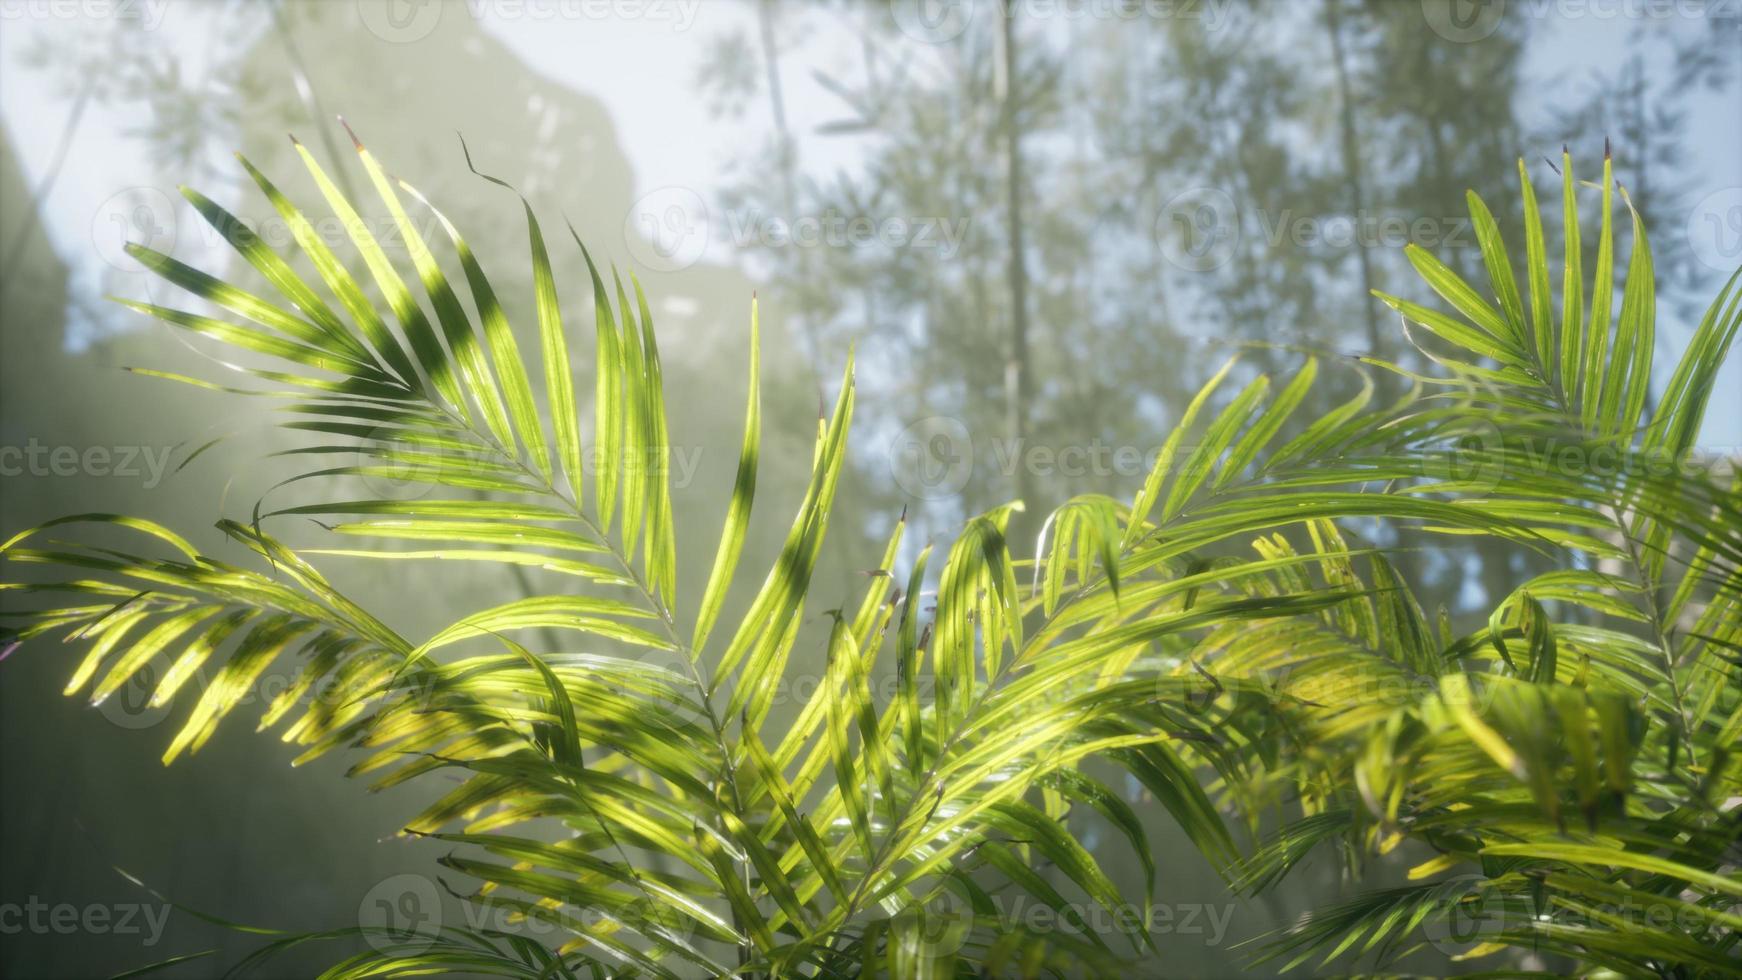 starkt ljus som skiner genom den fuktiga dimmiga dimman och djungellöven foto